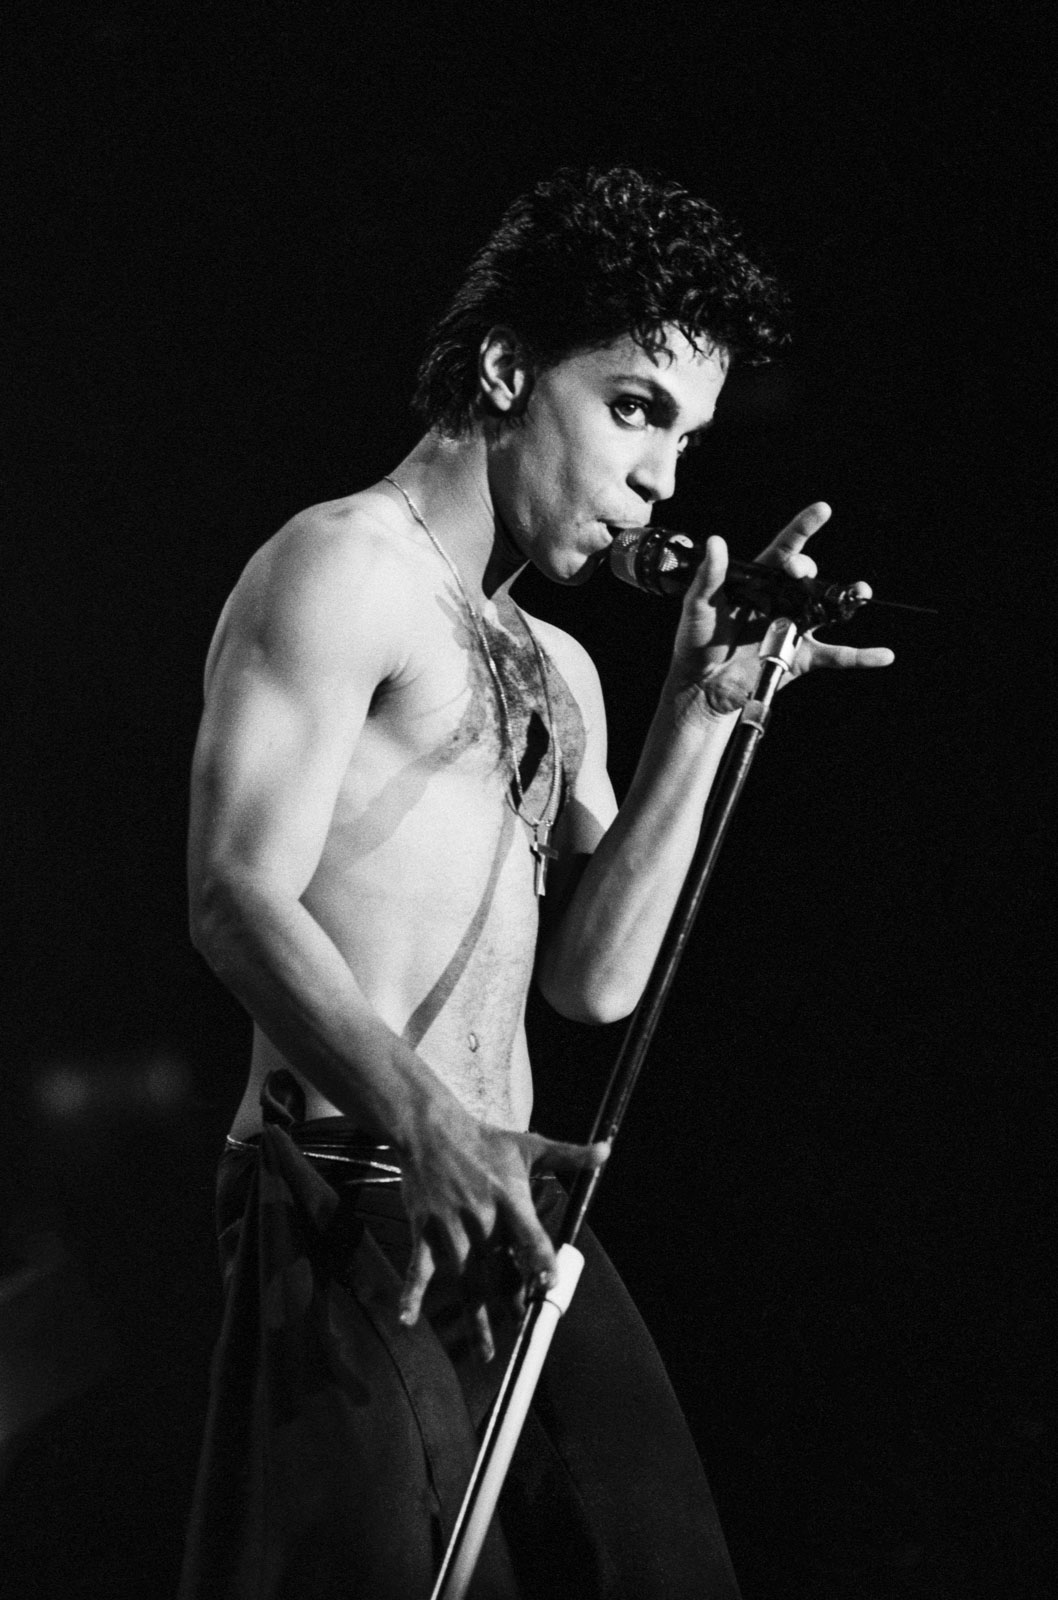 Prince at Wembley, 1986